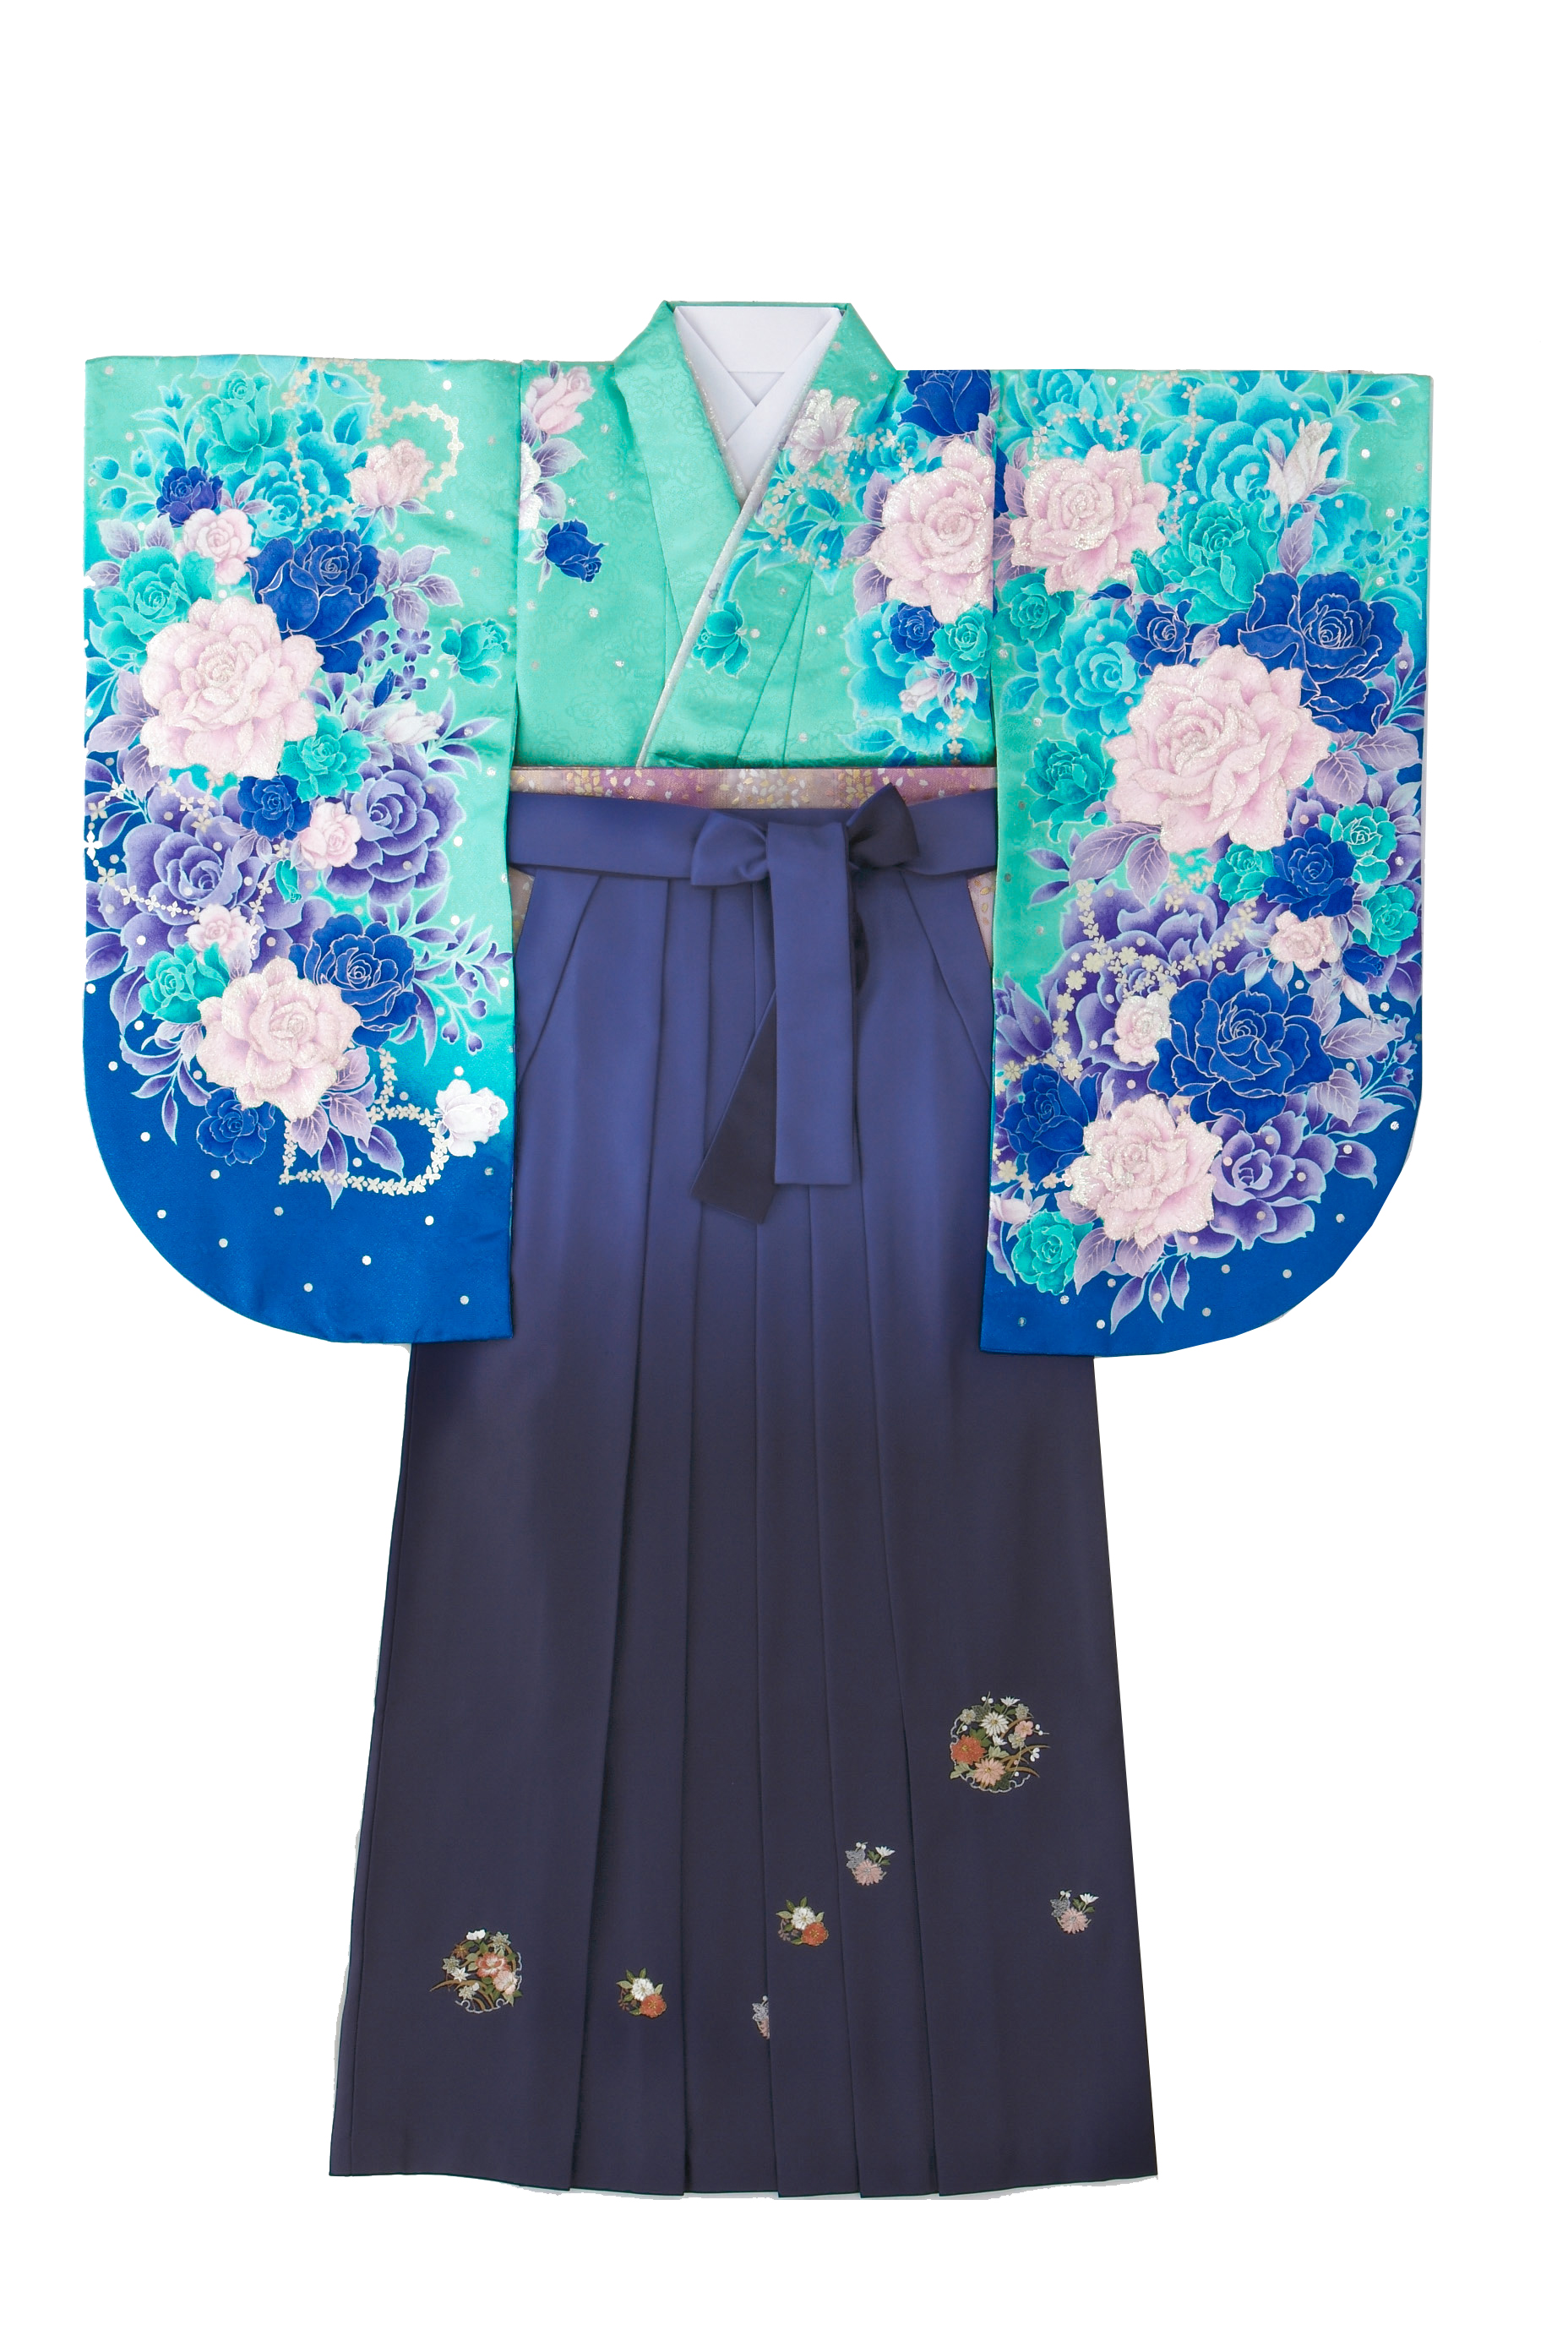 モダン柄に合わせた刺繍入りの袴スタイル